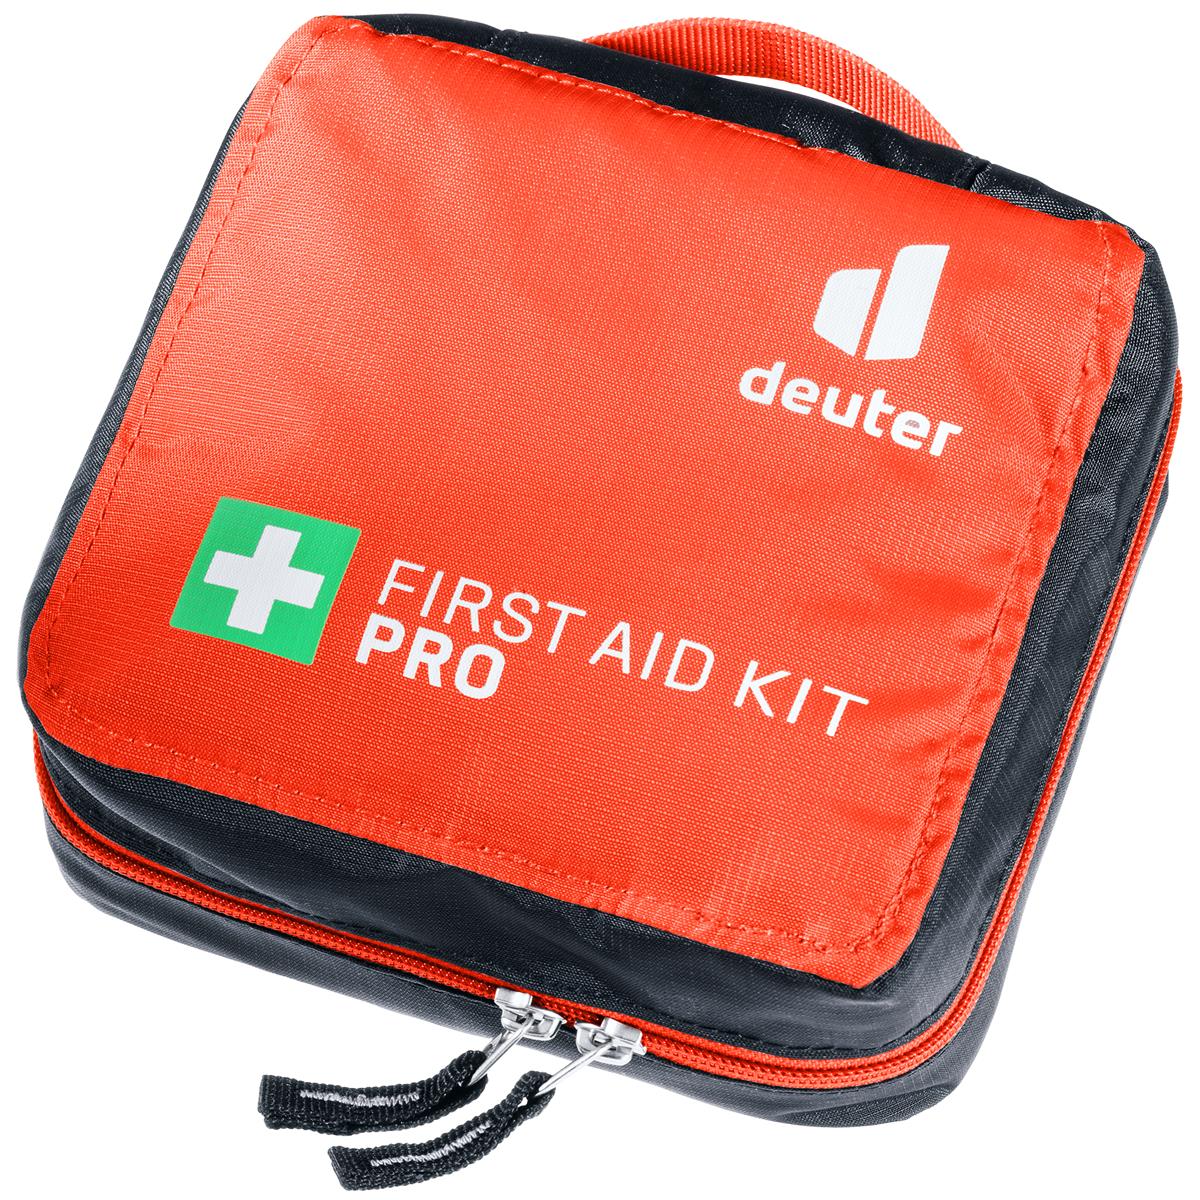 Deuter First Aid Kit First Aid Kit Pro Papaya